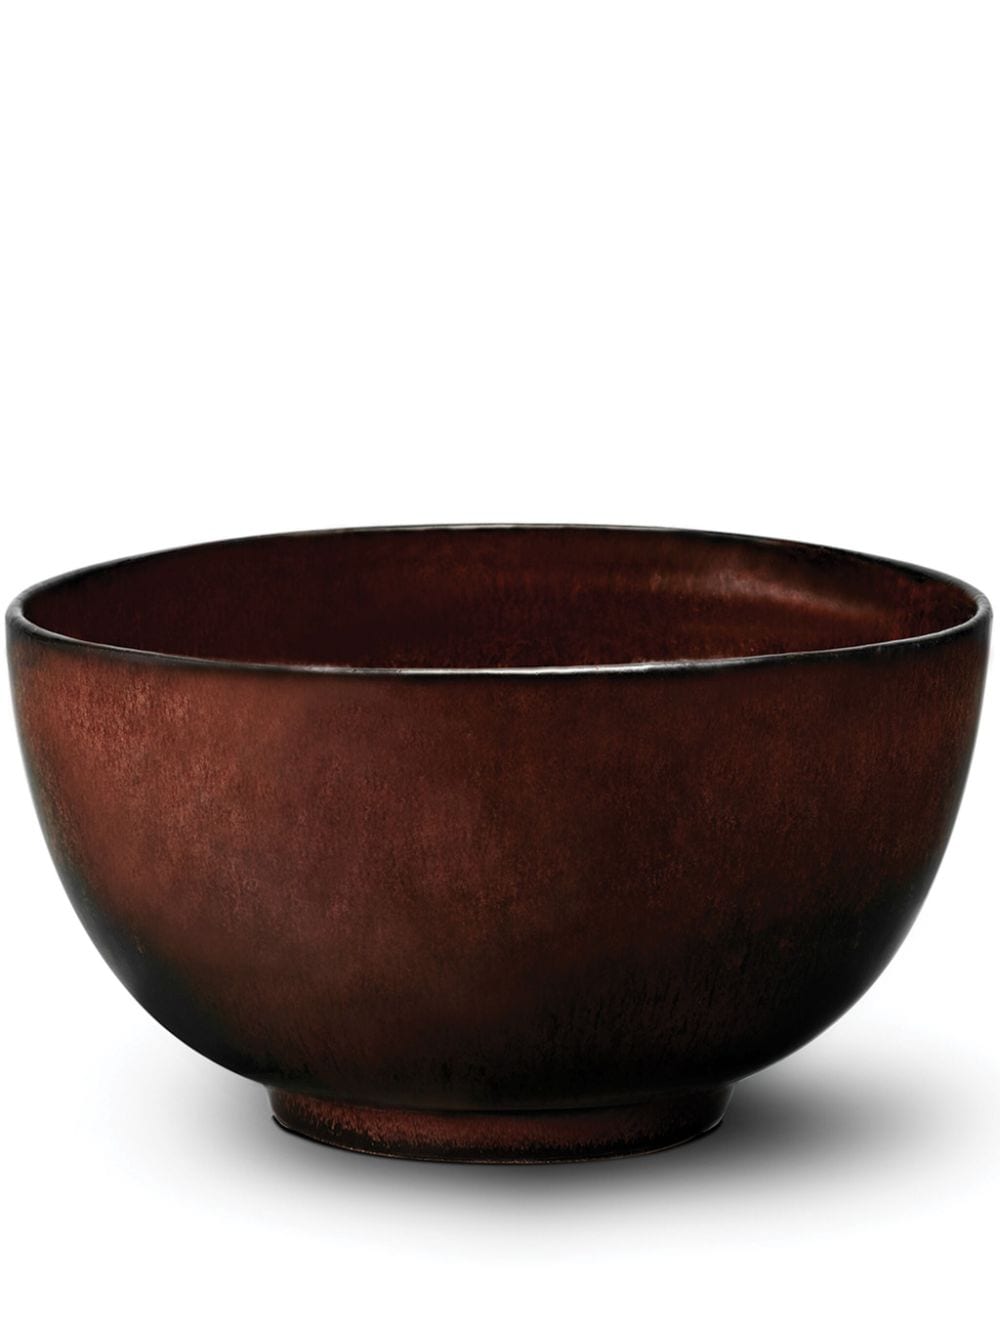 L'Objet Terra porcelain cereal bowl (14cm) - Red von L'Objet